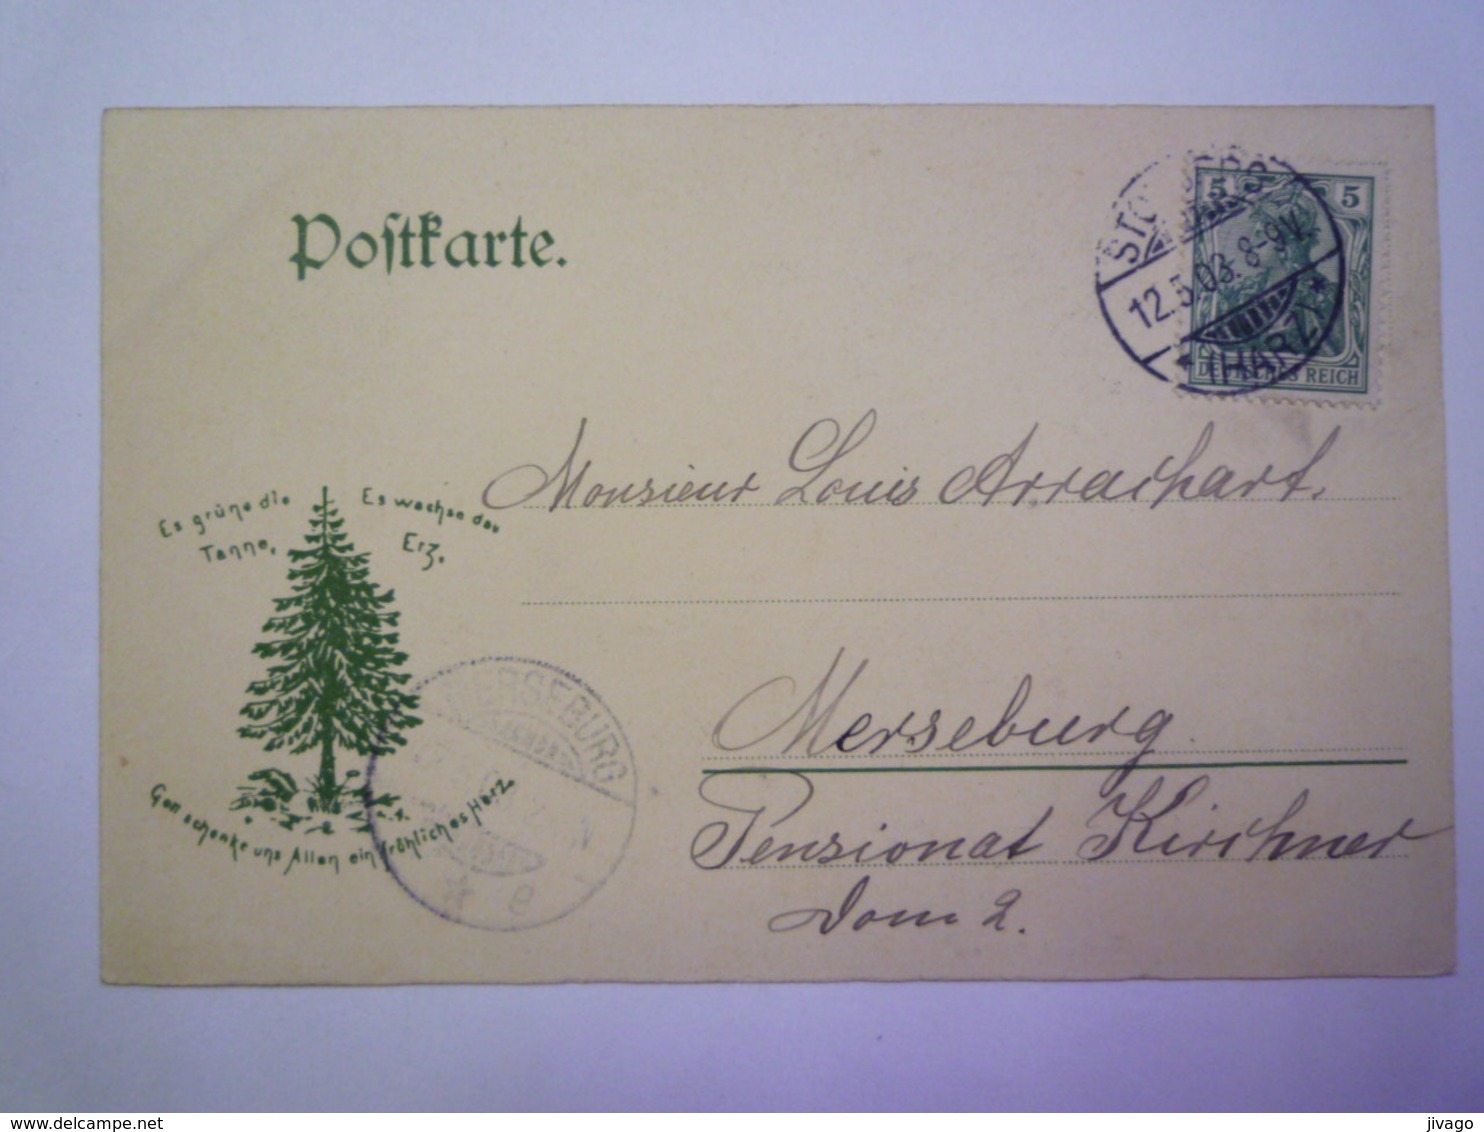 STOLBERG  Im  HARZ  :  THYRATHAL   1903    - Stolberg (Harz)